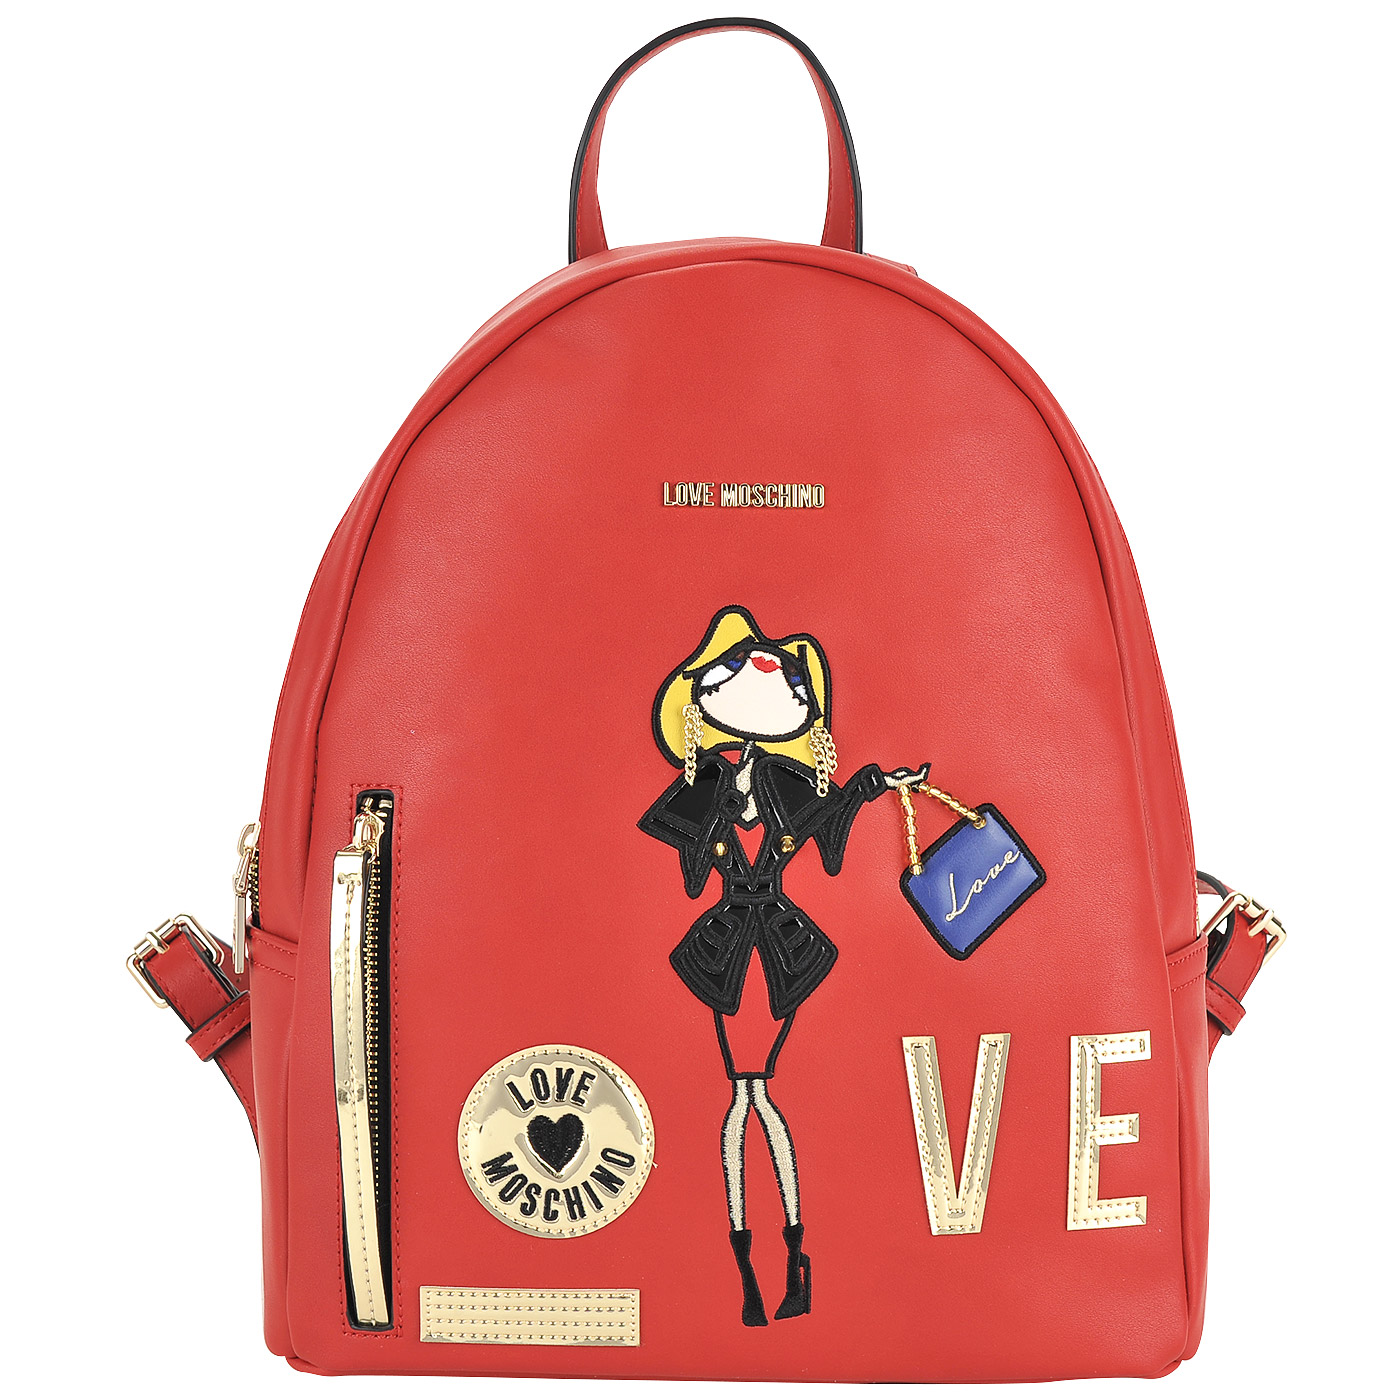 Love Moschino Вместительный женский рюкзак красного цвета с аппликацией